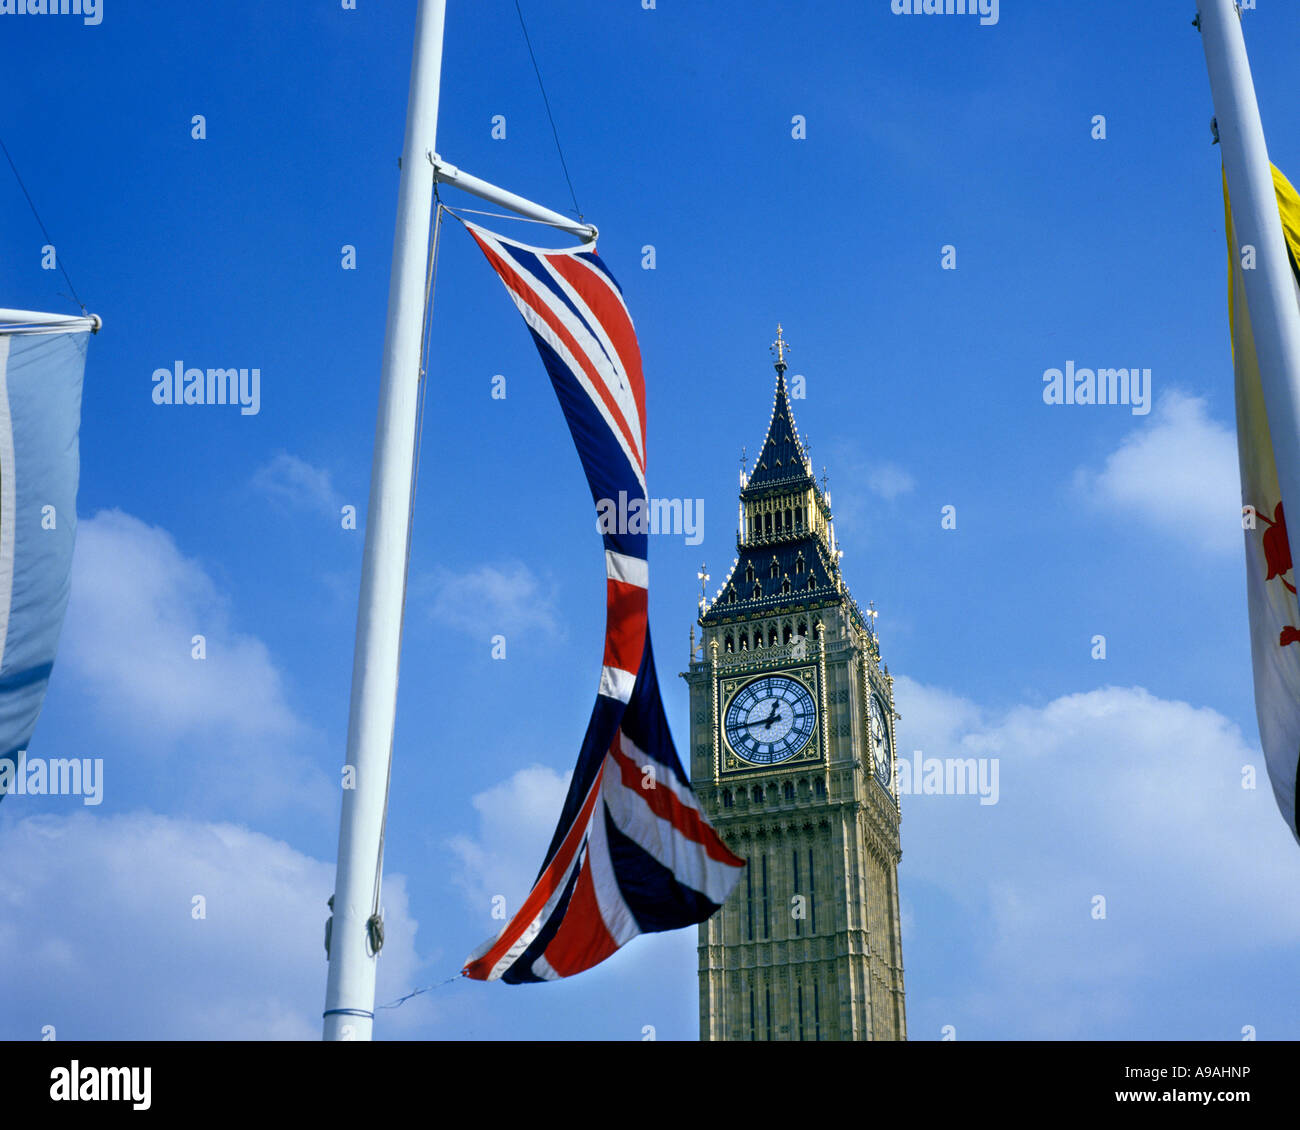 UNION JACK UNITED KINGDOM FLAG ON FLAGPOLE BIG BEN PARLIAMENT SQUARE LONDON ENGLAND UK Stock Photo